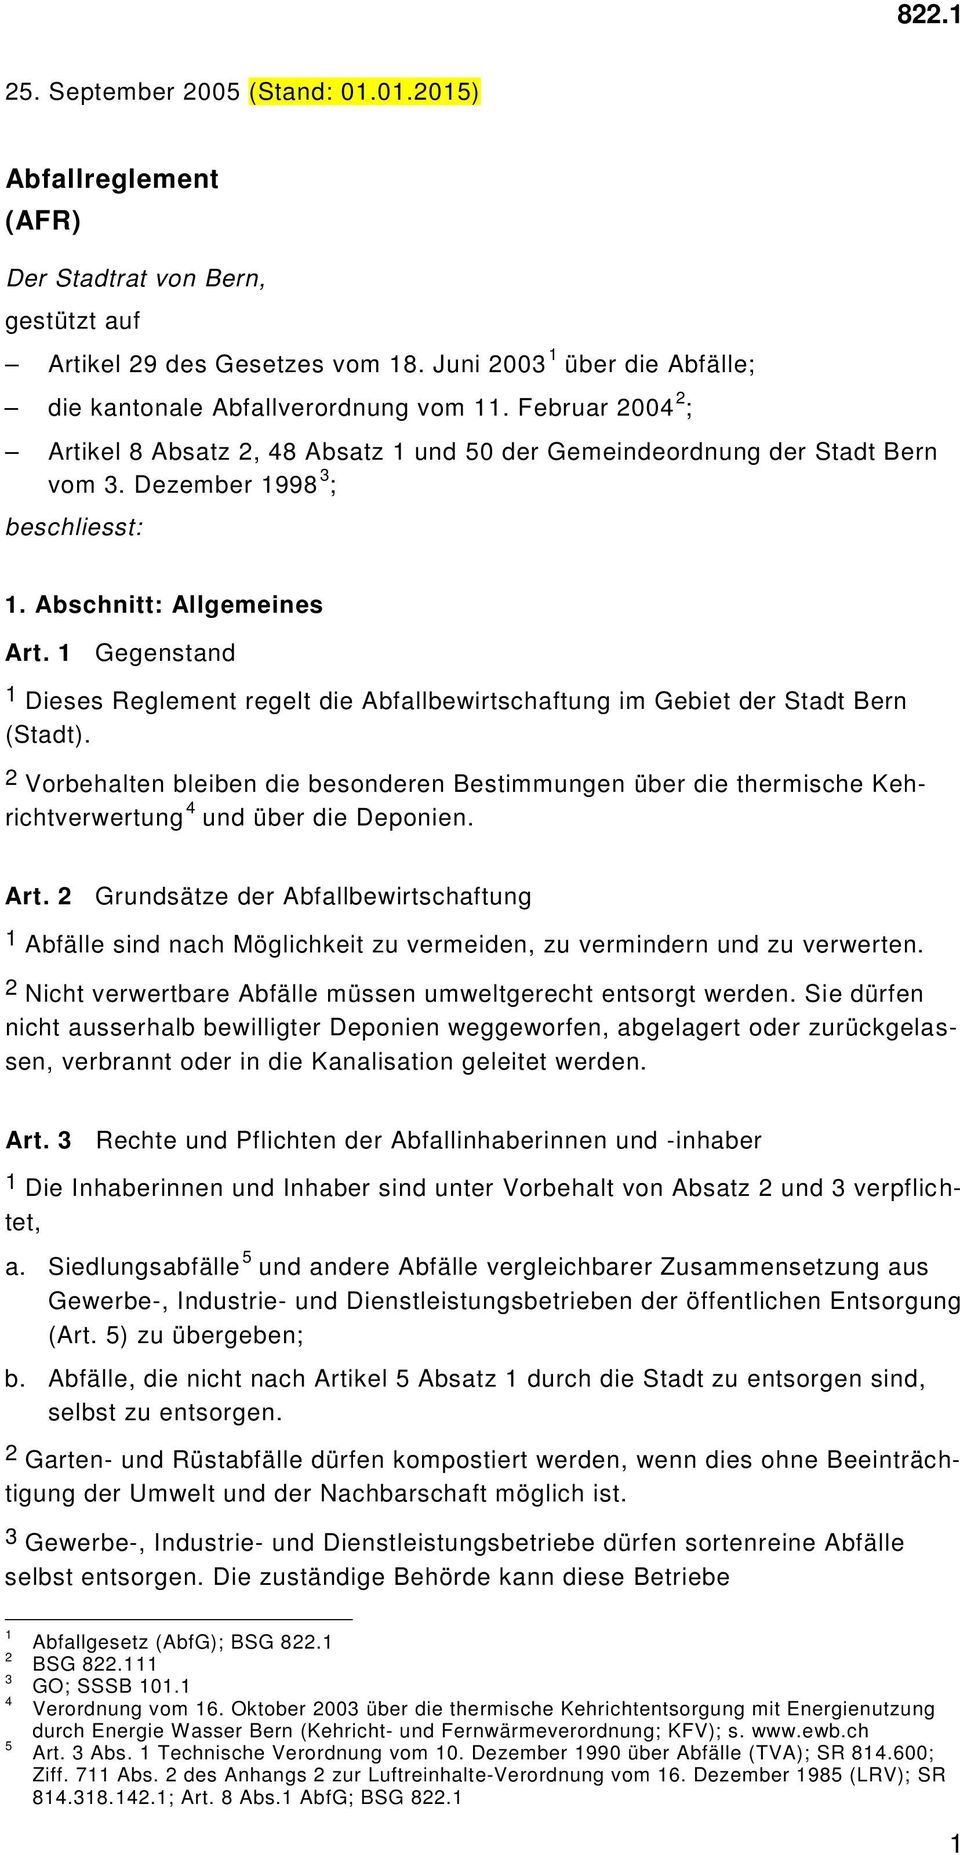 Gegenstand Dieses Reglement regelt die Abfallbewirtschaftung im Gebiet der Stadt Bern (Stadt).